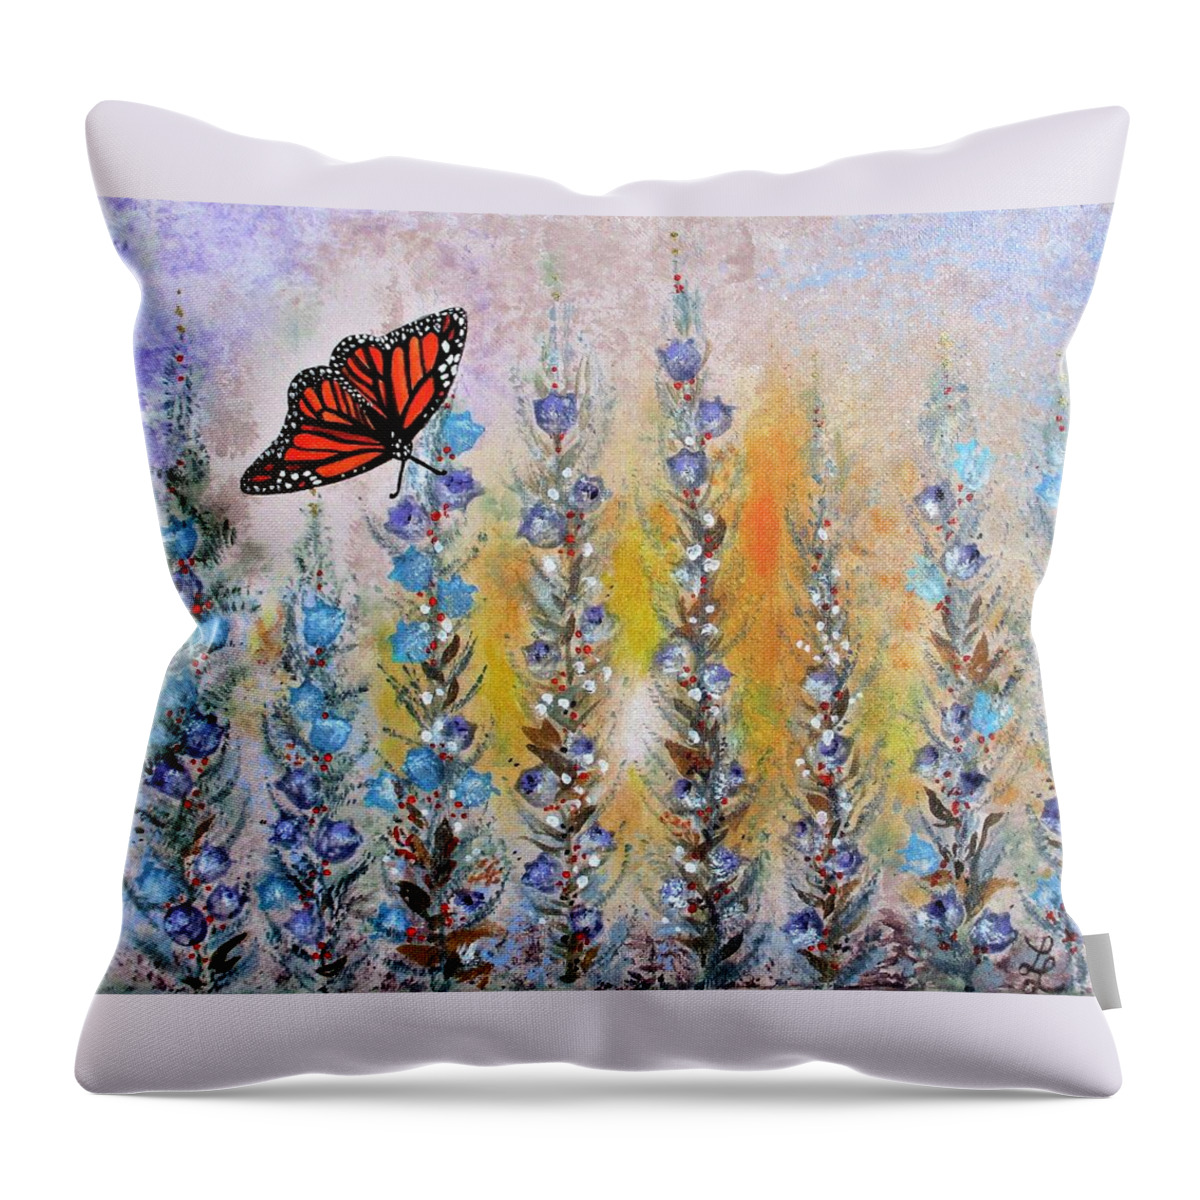 Fantasy Garden Butterfly Throw Pillow featuring the painting Fantasy Garden Butterfly by Lynn Raizel Lane